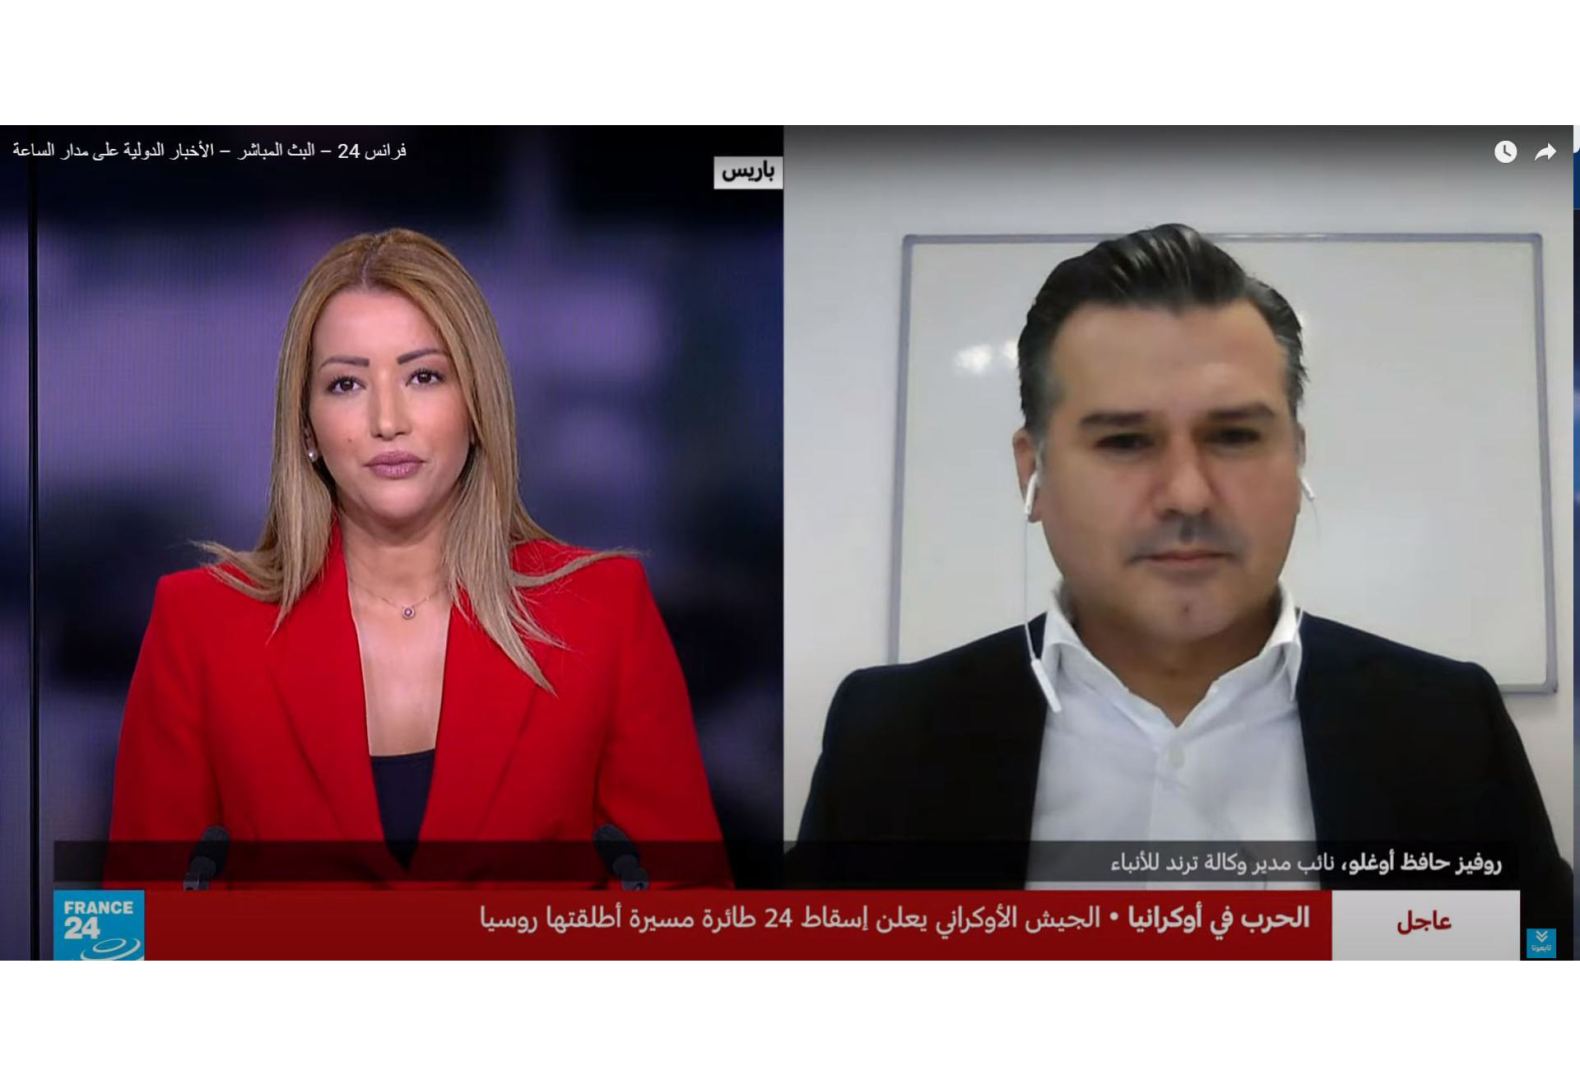 Макрон ведет себя как армянский депутат - Руфиз Хафизоглу в интервью телеканалу France 24 (ВИДЕО)